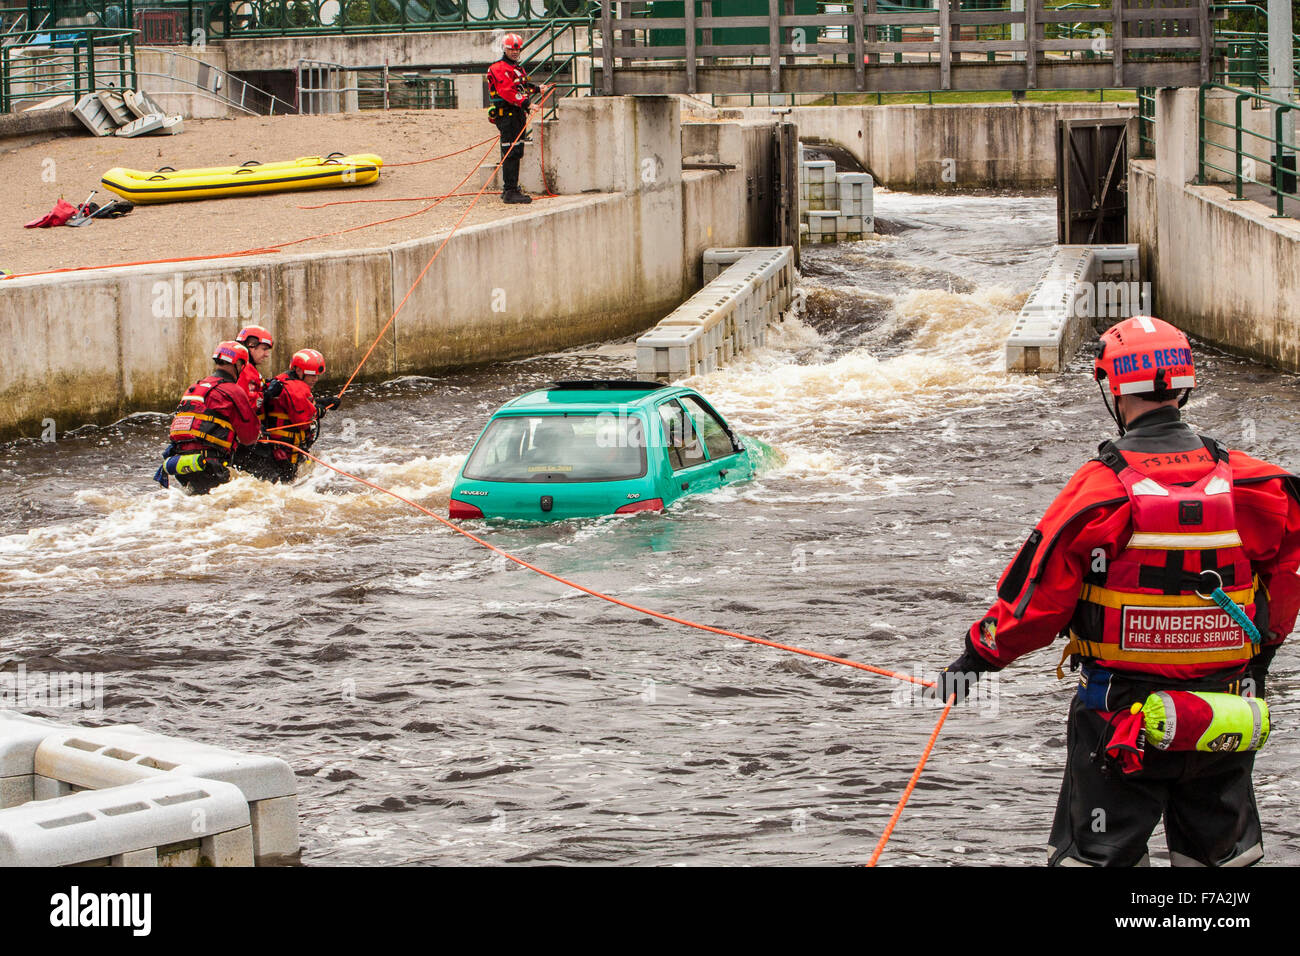 Humberside Fire and Rescue Service faire un exercice d'entraînement de sauvetage en rivière à l'Barrage Tees,Stockton-on-Tees Banque D'Images